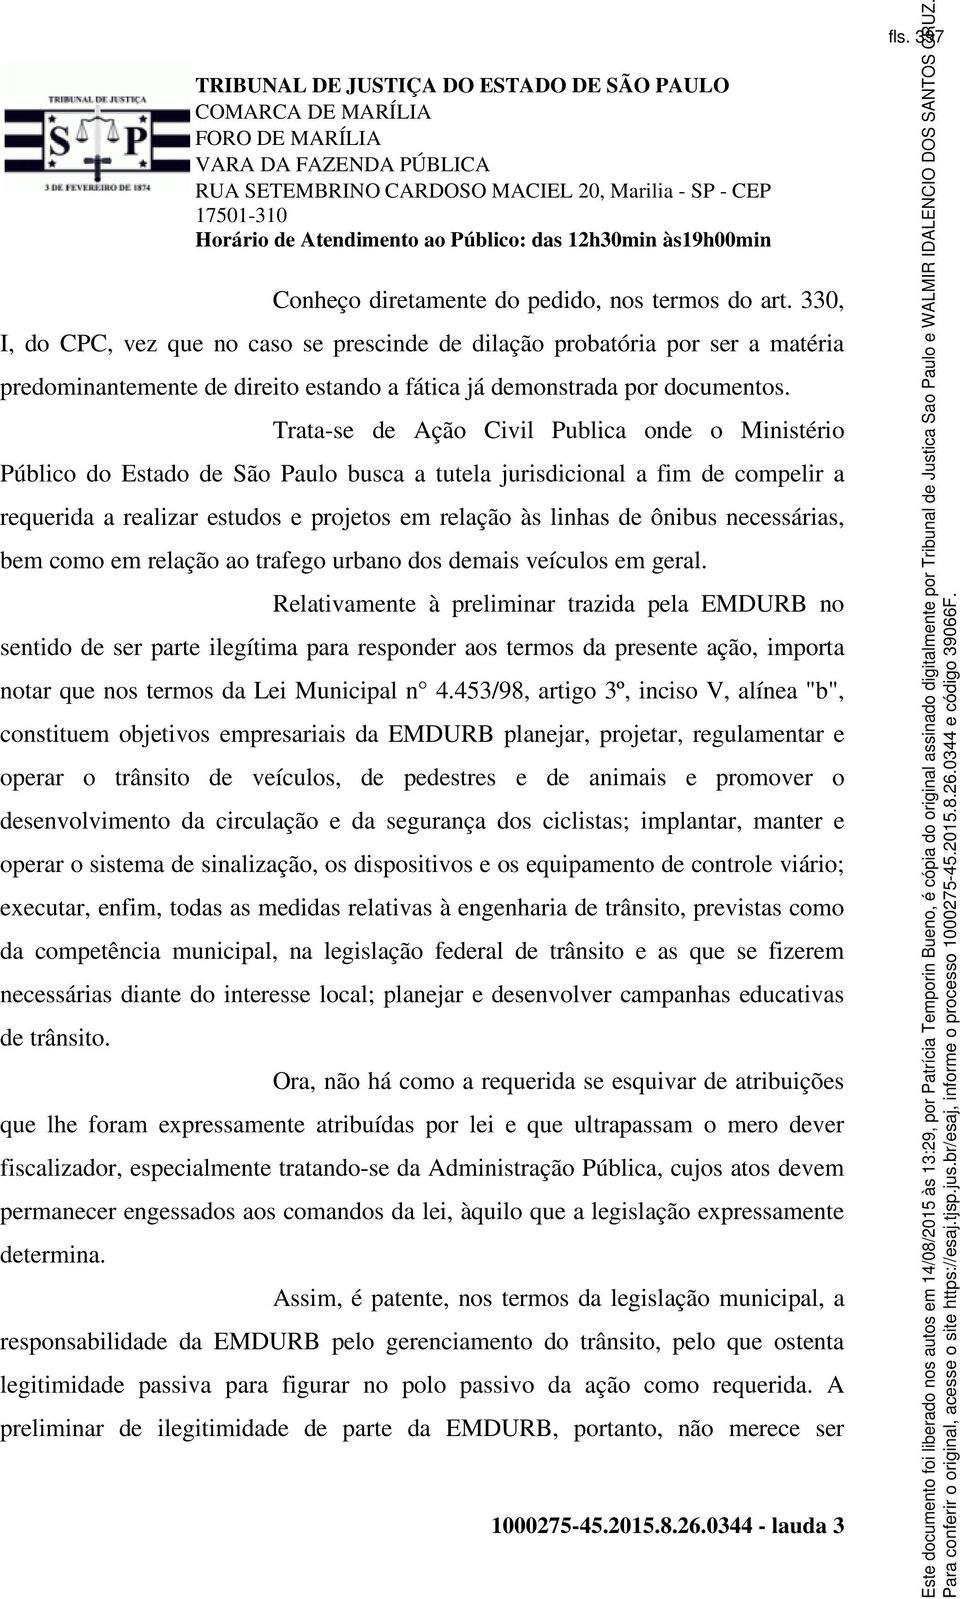 Trata-se de Ação Civil Publica onde o Ministério Público do Estado de São Paulo busca a tutela jurisdicional a fim de compelir a requerida a realizar estudos e projetos em relação às linhas de ônibus